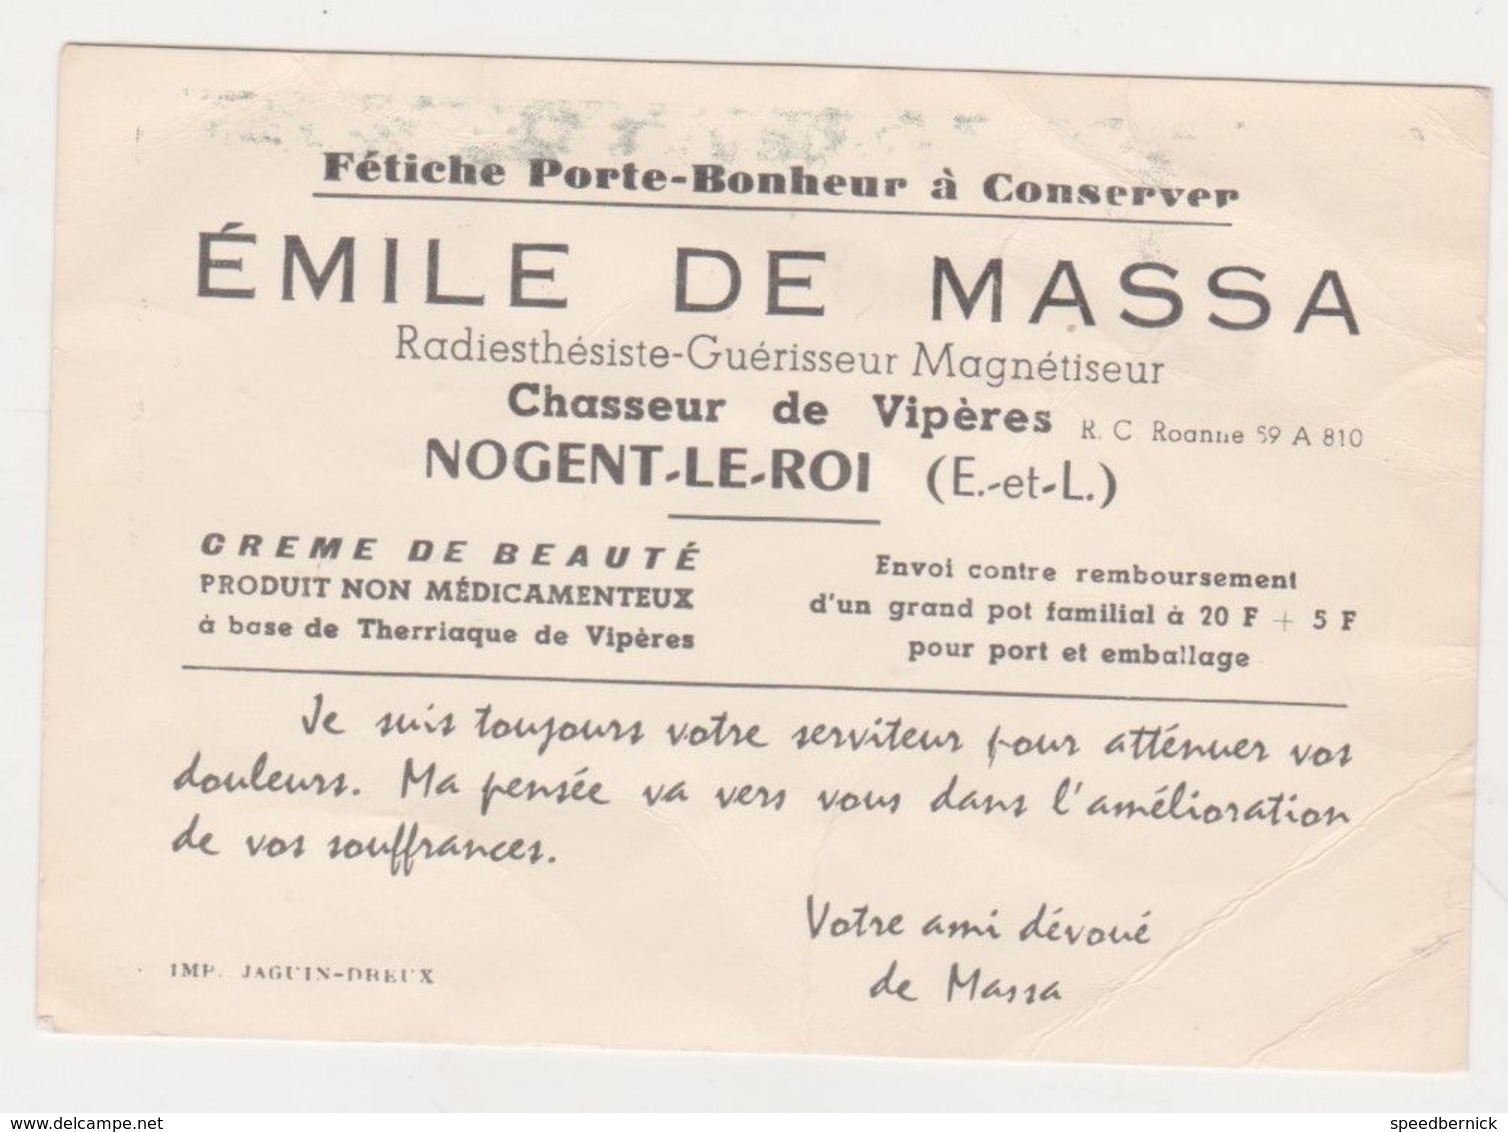 28021 Carte Visite Fetiche Chasseur Viperes Radiesthesiste Guerisseur Magnetiseur - Emile Massa Nogent Roi France - Religión & Esoterismo